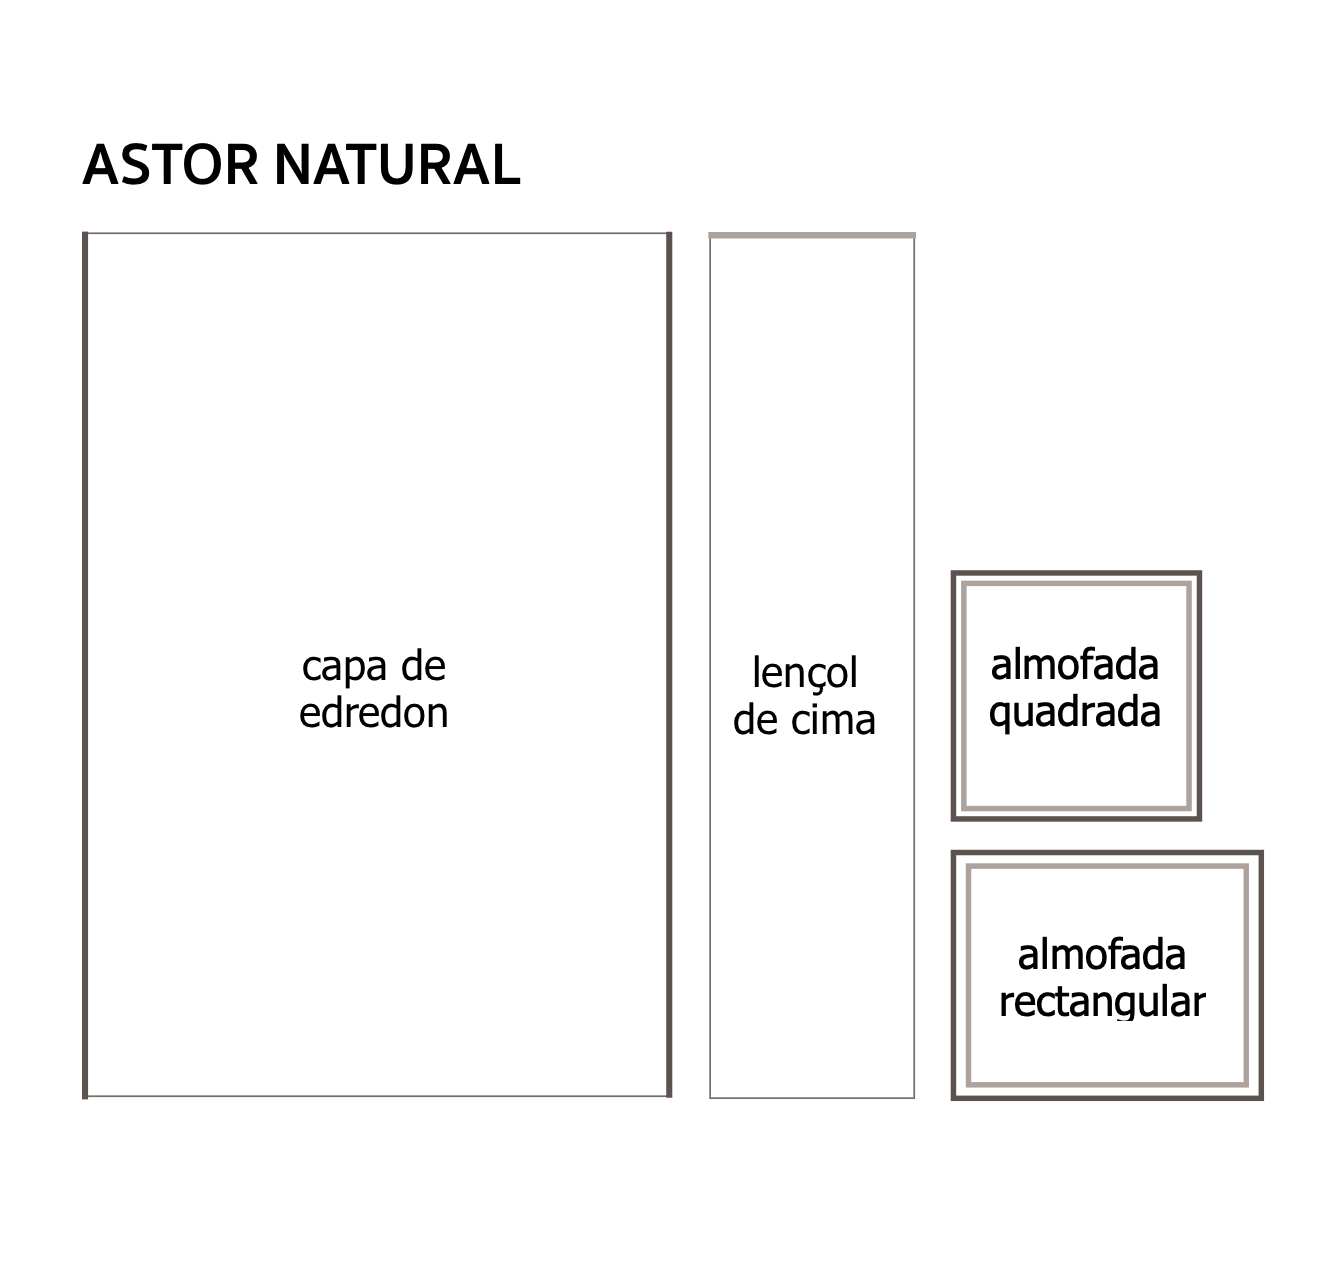 Lençol de Cima Designers Guild Astor Natural - Stoc Casa